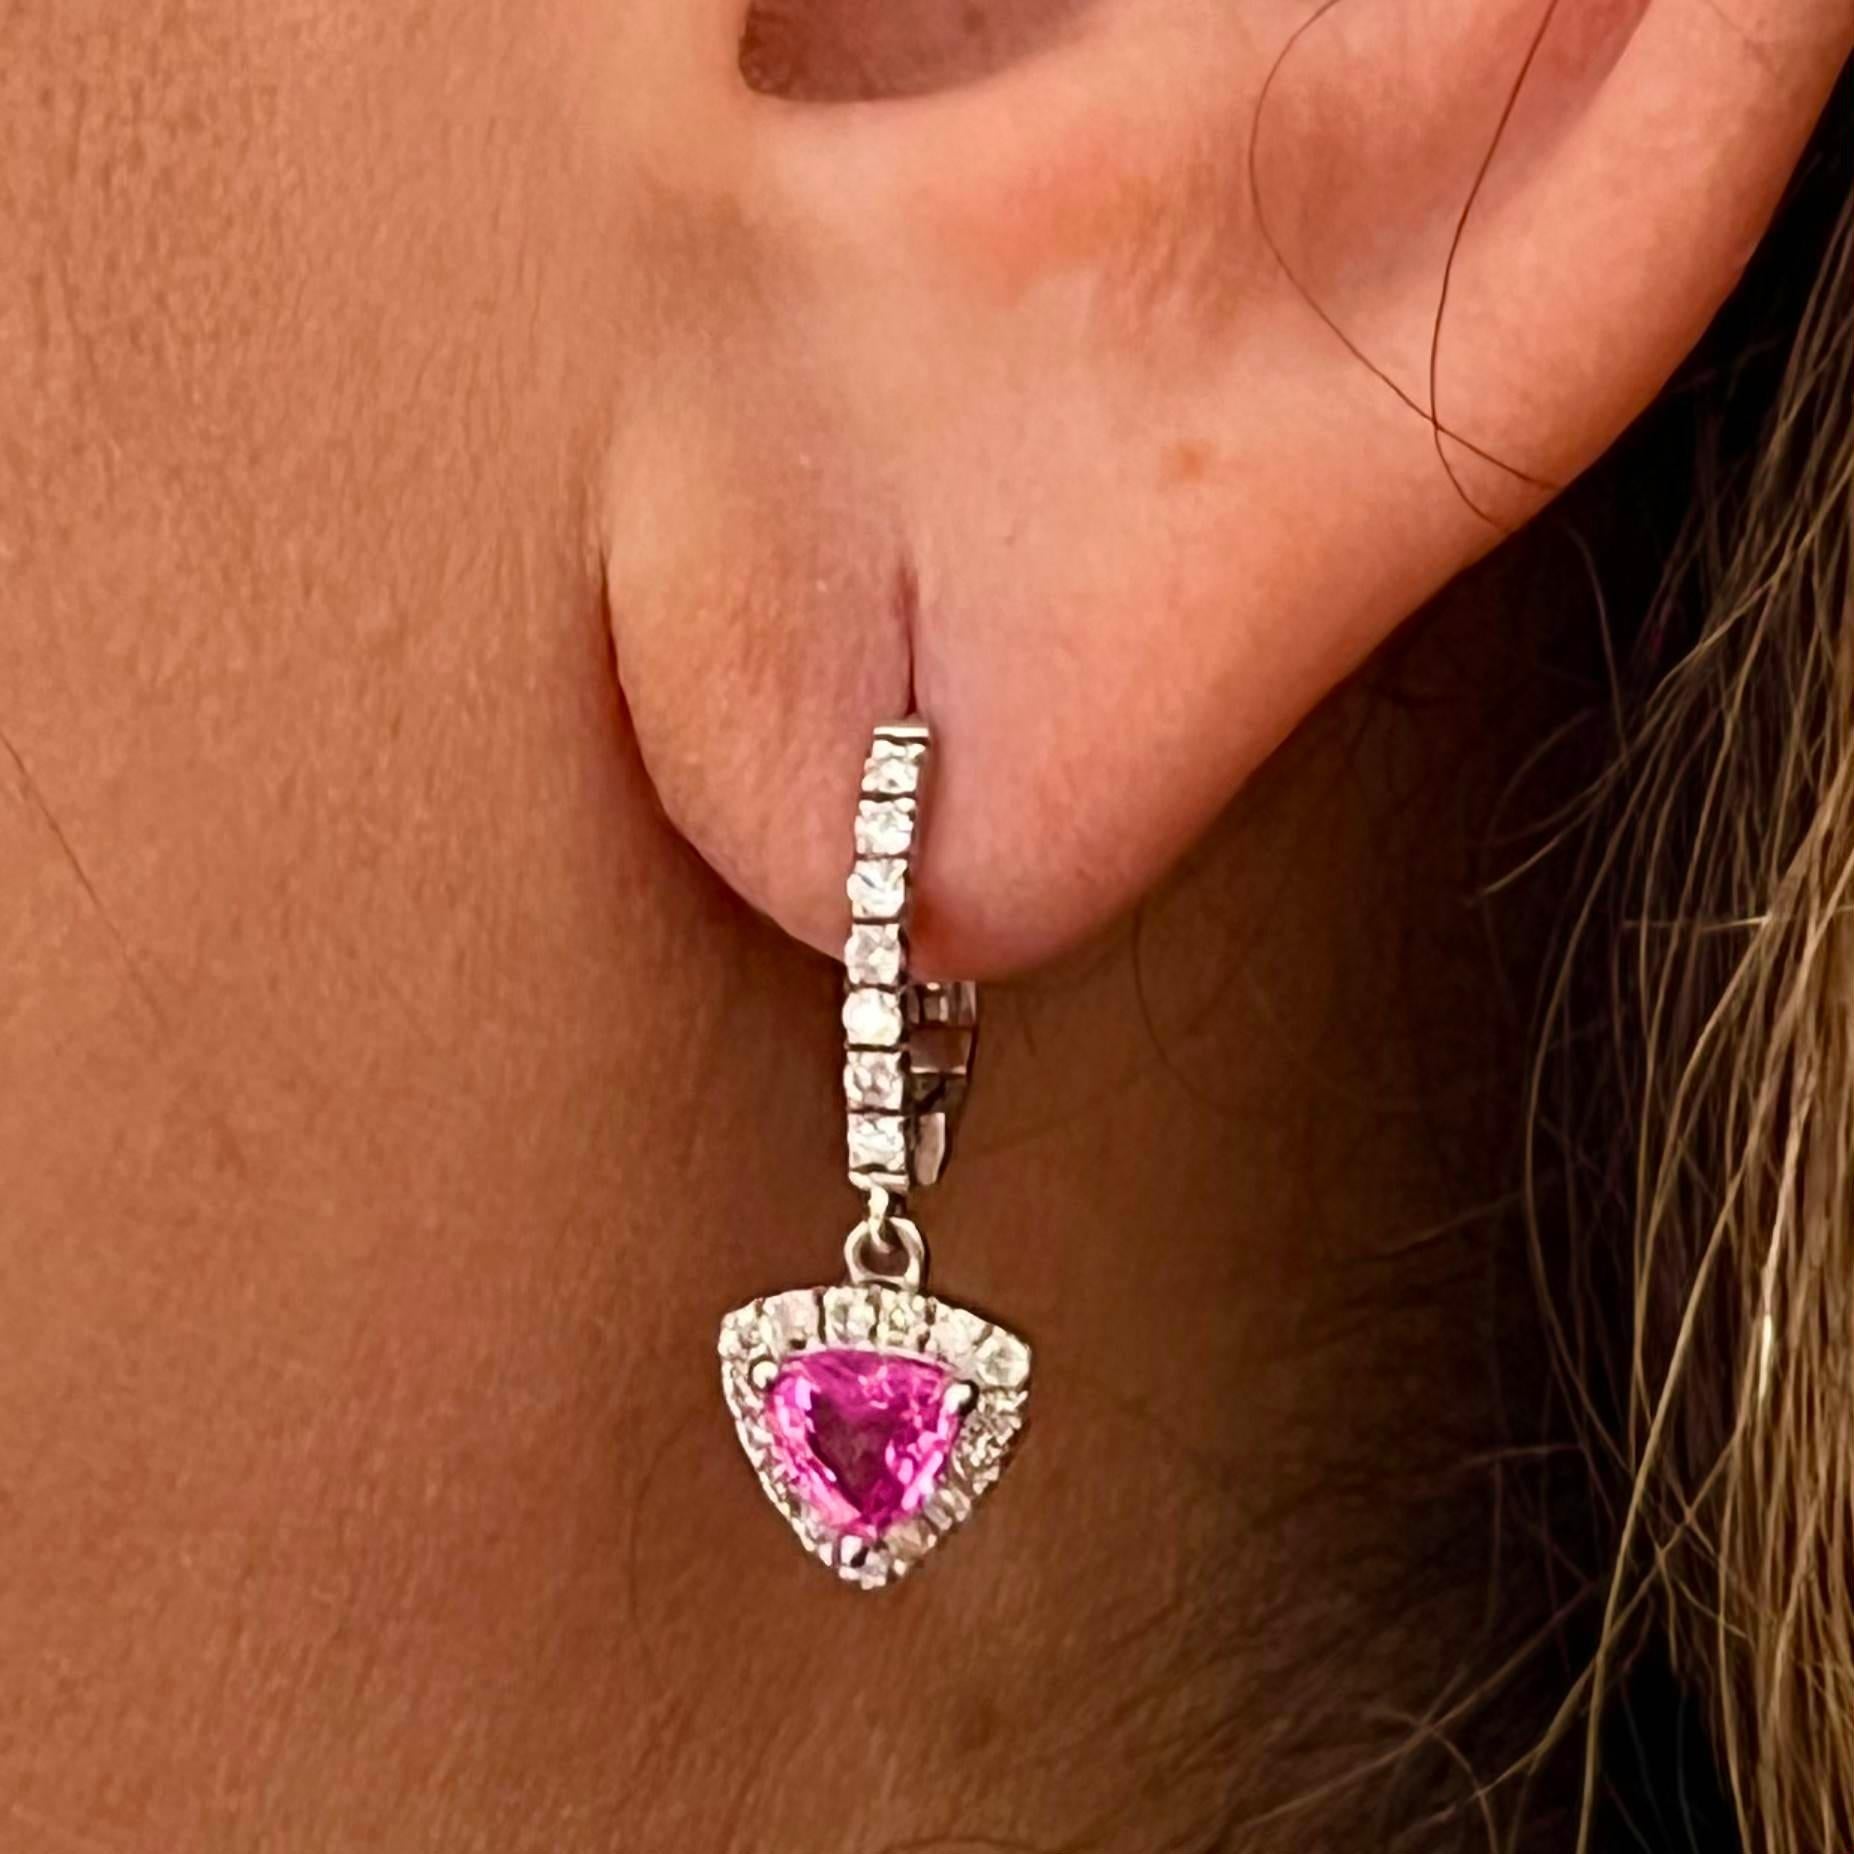 Prächtige natürliche fein facettiert Saphir Diamant Ohrringe 14k Weißgold 2,01 TCW zertifiziert $3,950 307916

Dies ist ein einzigartiges, maßgeschneidertes, glamouröses Schmuckstück!

Nichts sagt mehr 